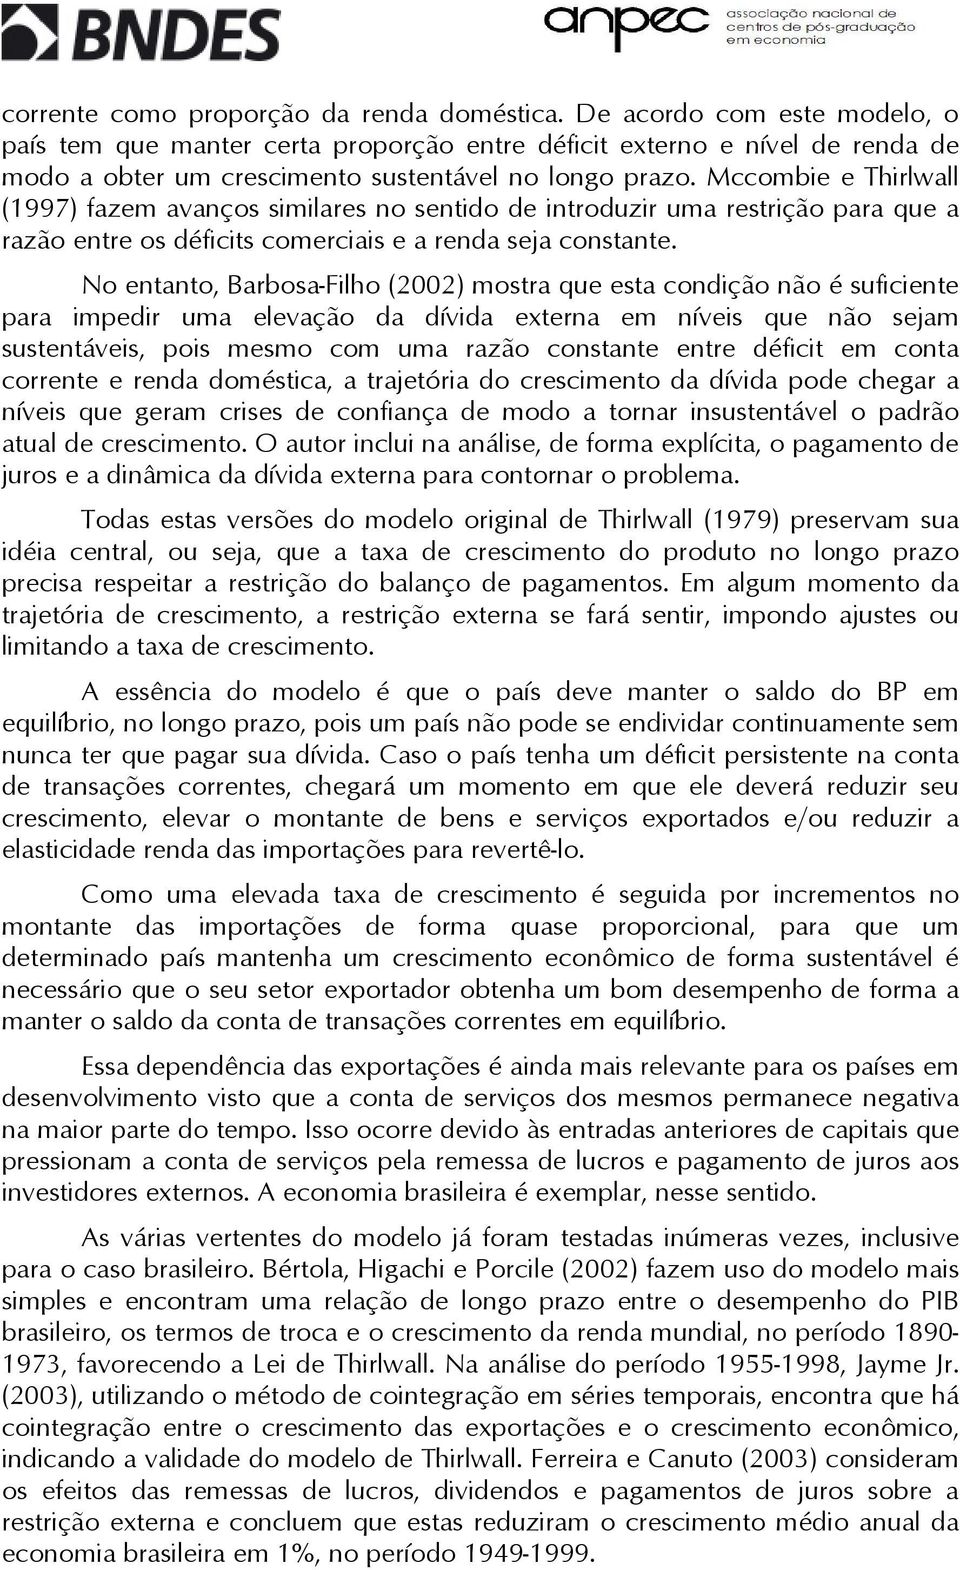 No enano, Barbosa-Filho (2002) mosra que esa condição não é suficiene para impedir uma elevação da dívida exerna em níveis que não sejam susenáveis, pois mesmo com uma razão consane enre défici em